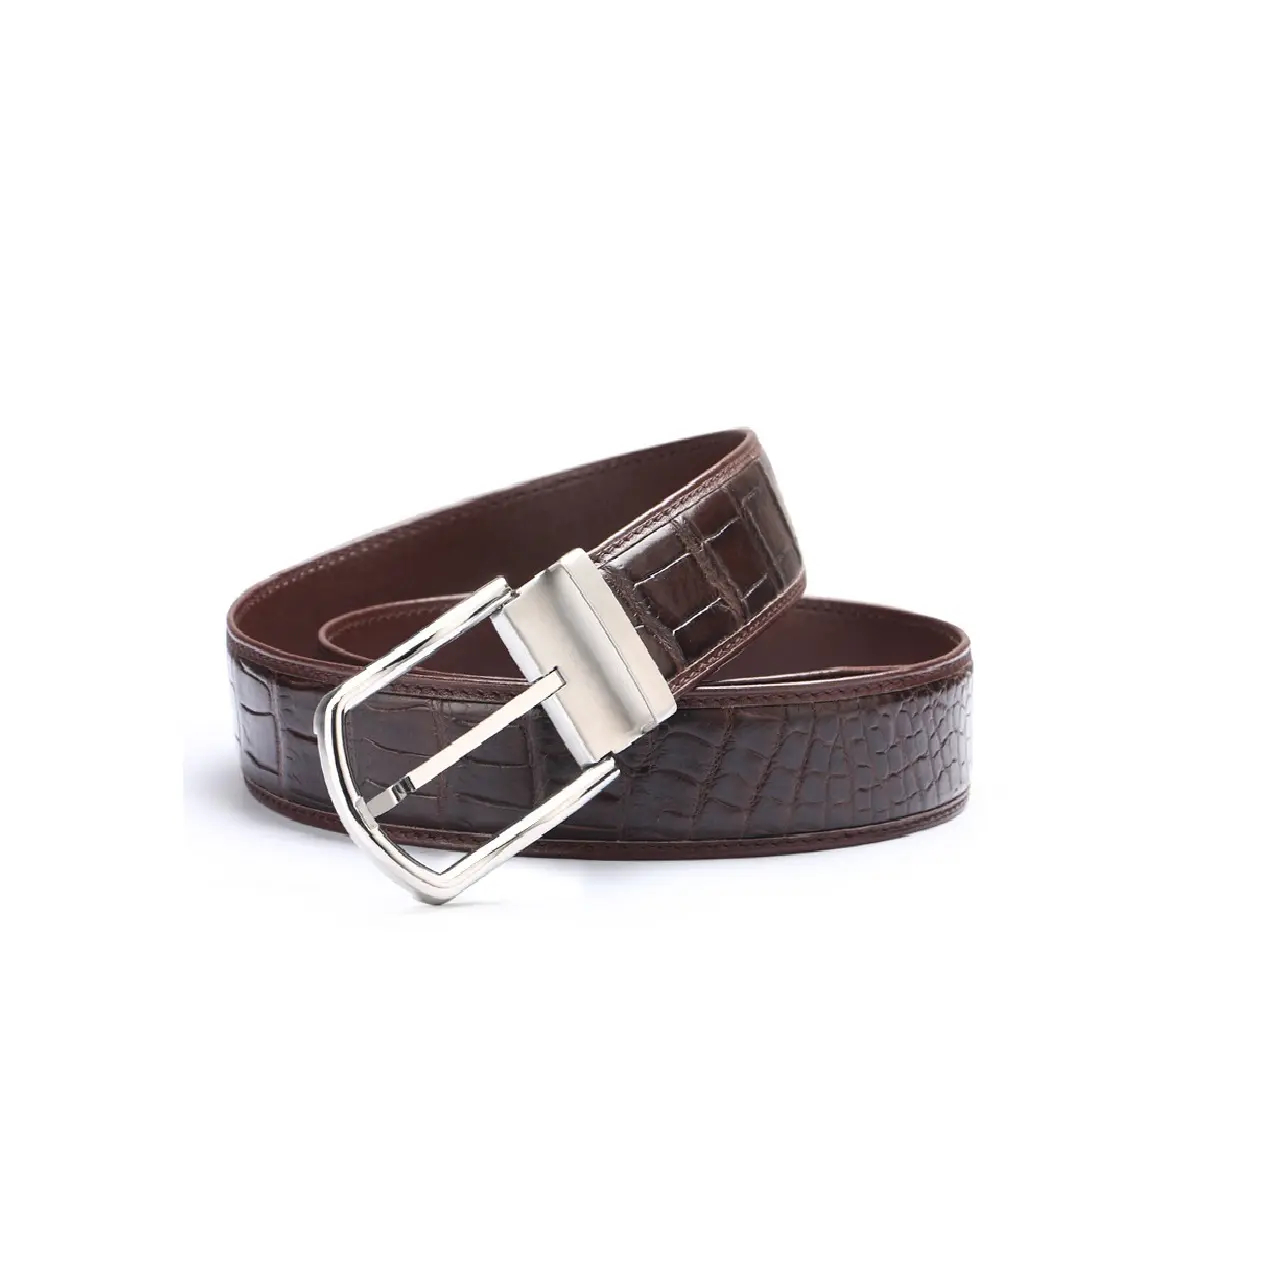 Hot Sale Low MOQ Length Men's Genuine Leather Belts OEM ODM Supported Genuine Leather Belt For Men